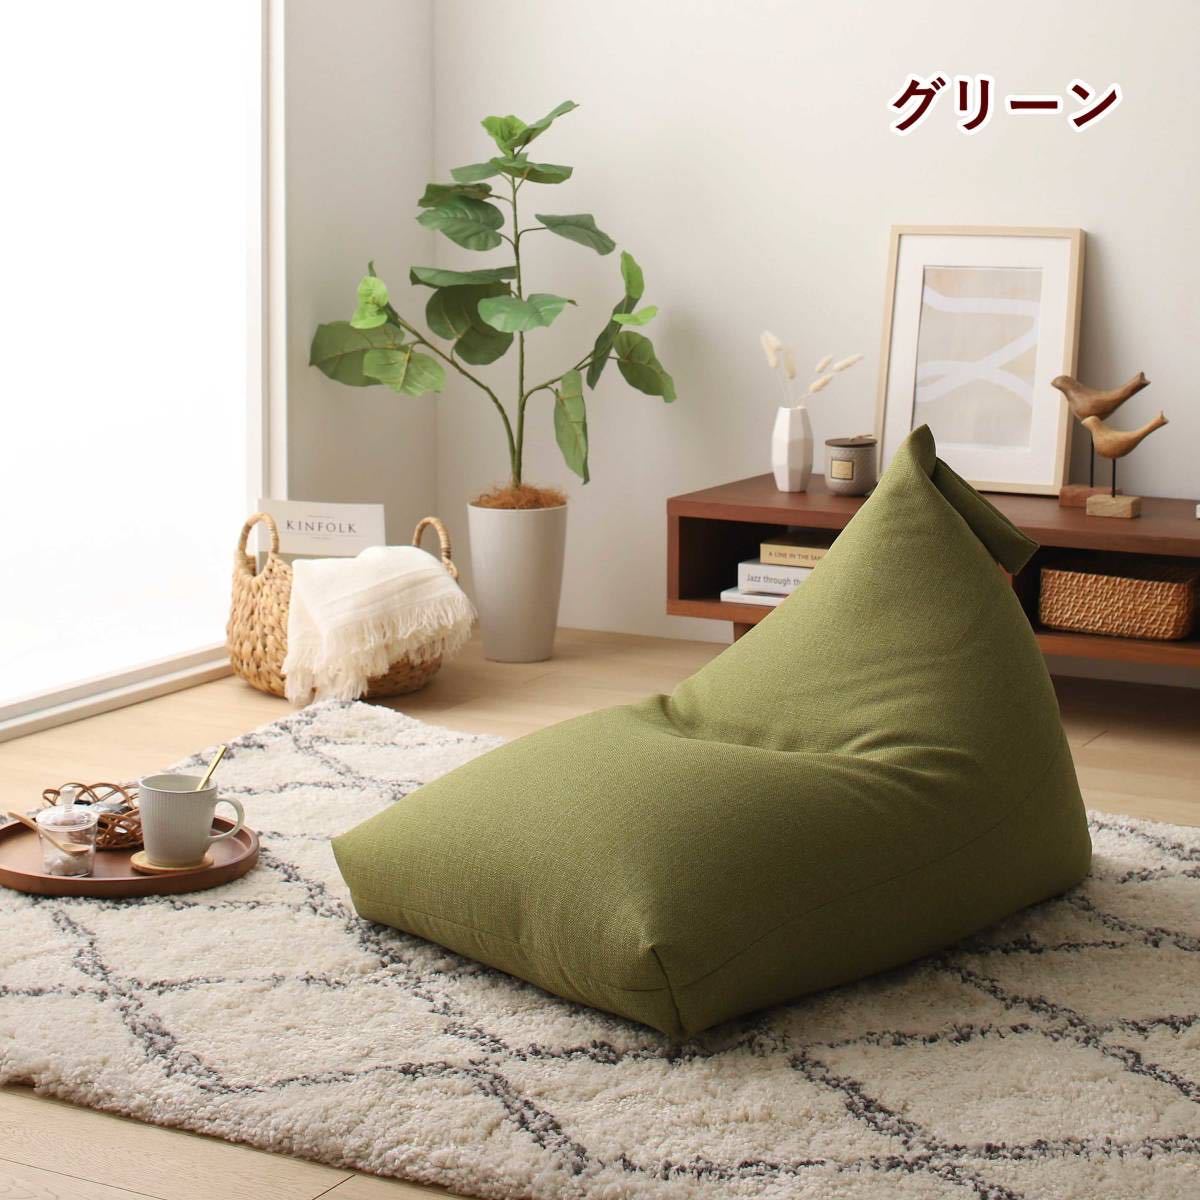  новый товар бисер диван подушка сделано в Японии сиденье "zaisu" текстильный .. соус Cross одиночный Северная Европа человек .dame. делать пол подушка compact 1 человек для 